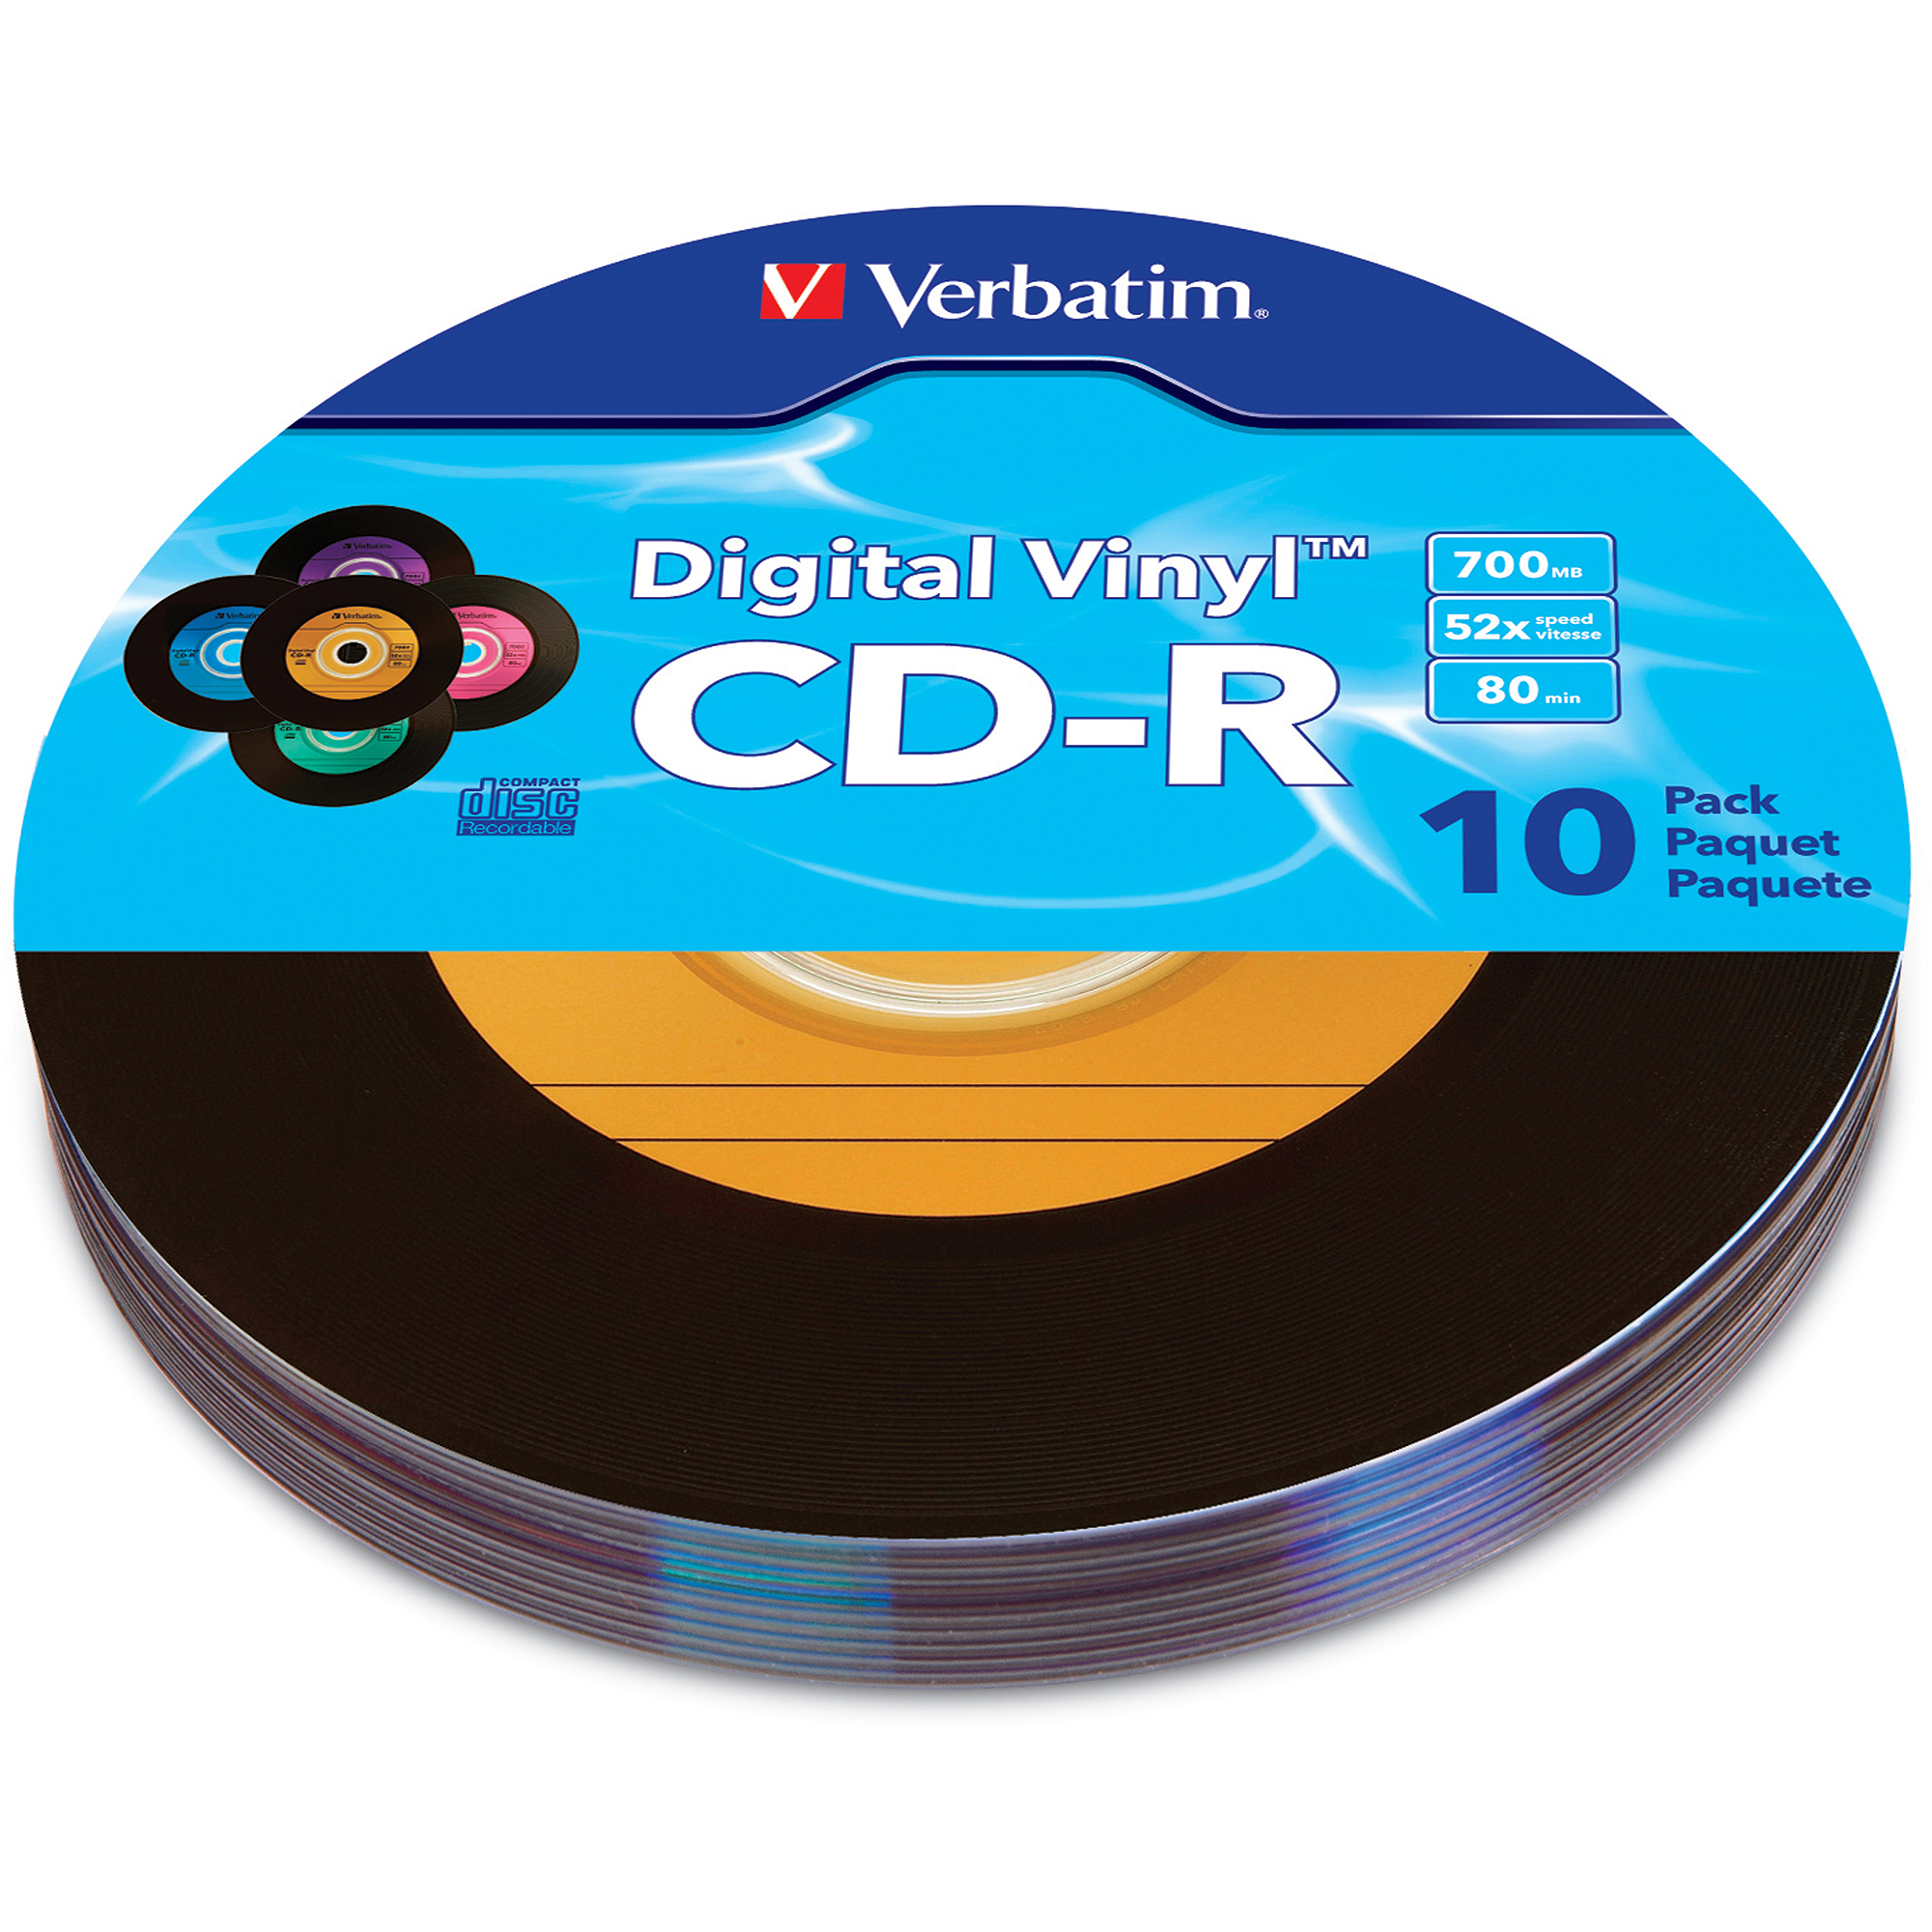 Verbatim Digital Vinyl CD-R 80 Min 700MB, 10pk, Multi-Color - image 1 of 2